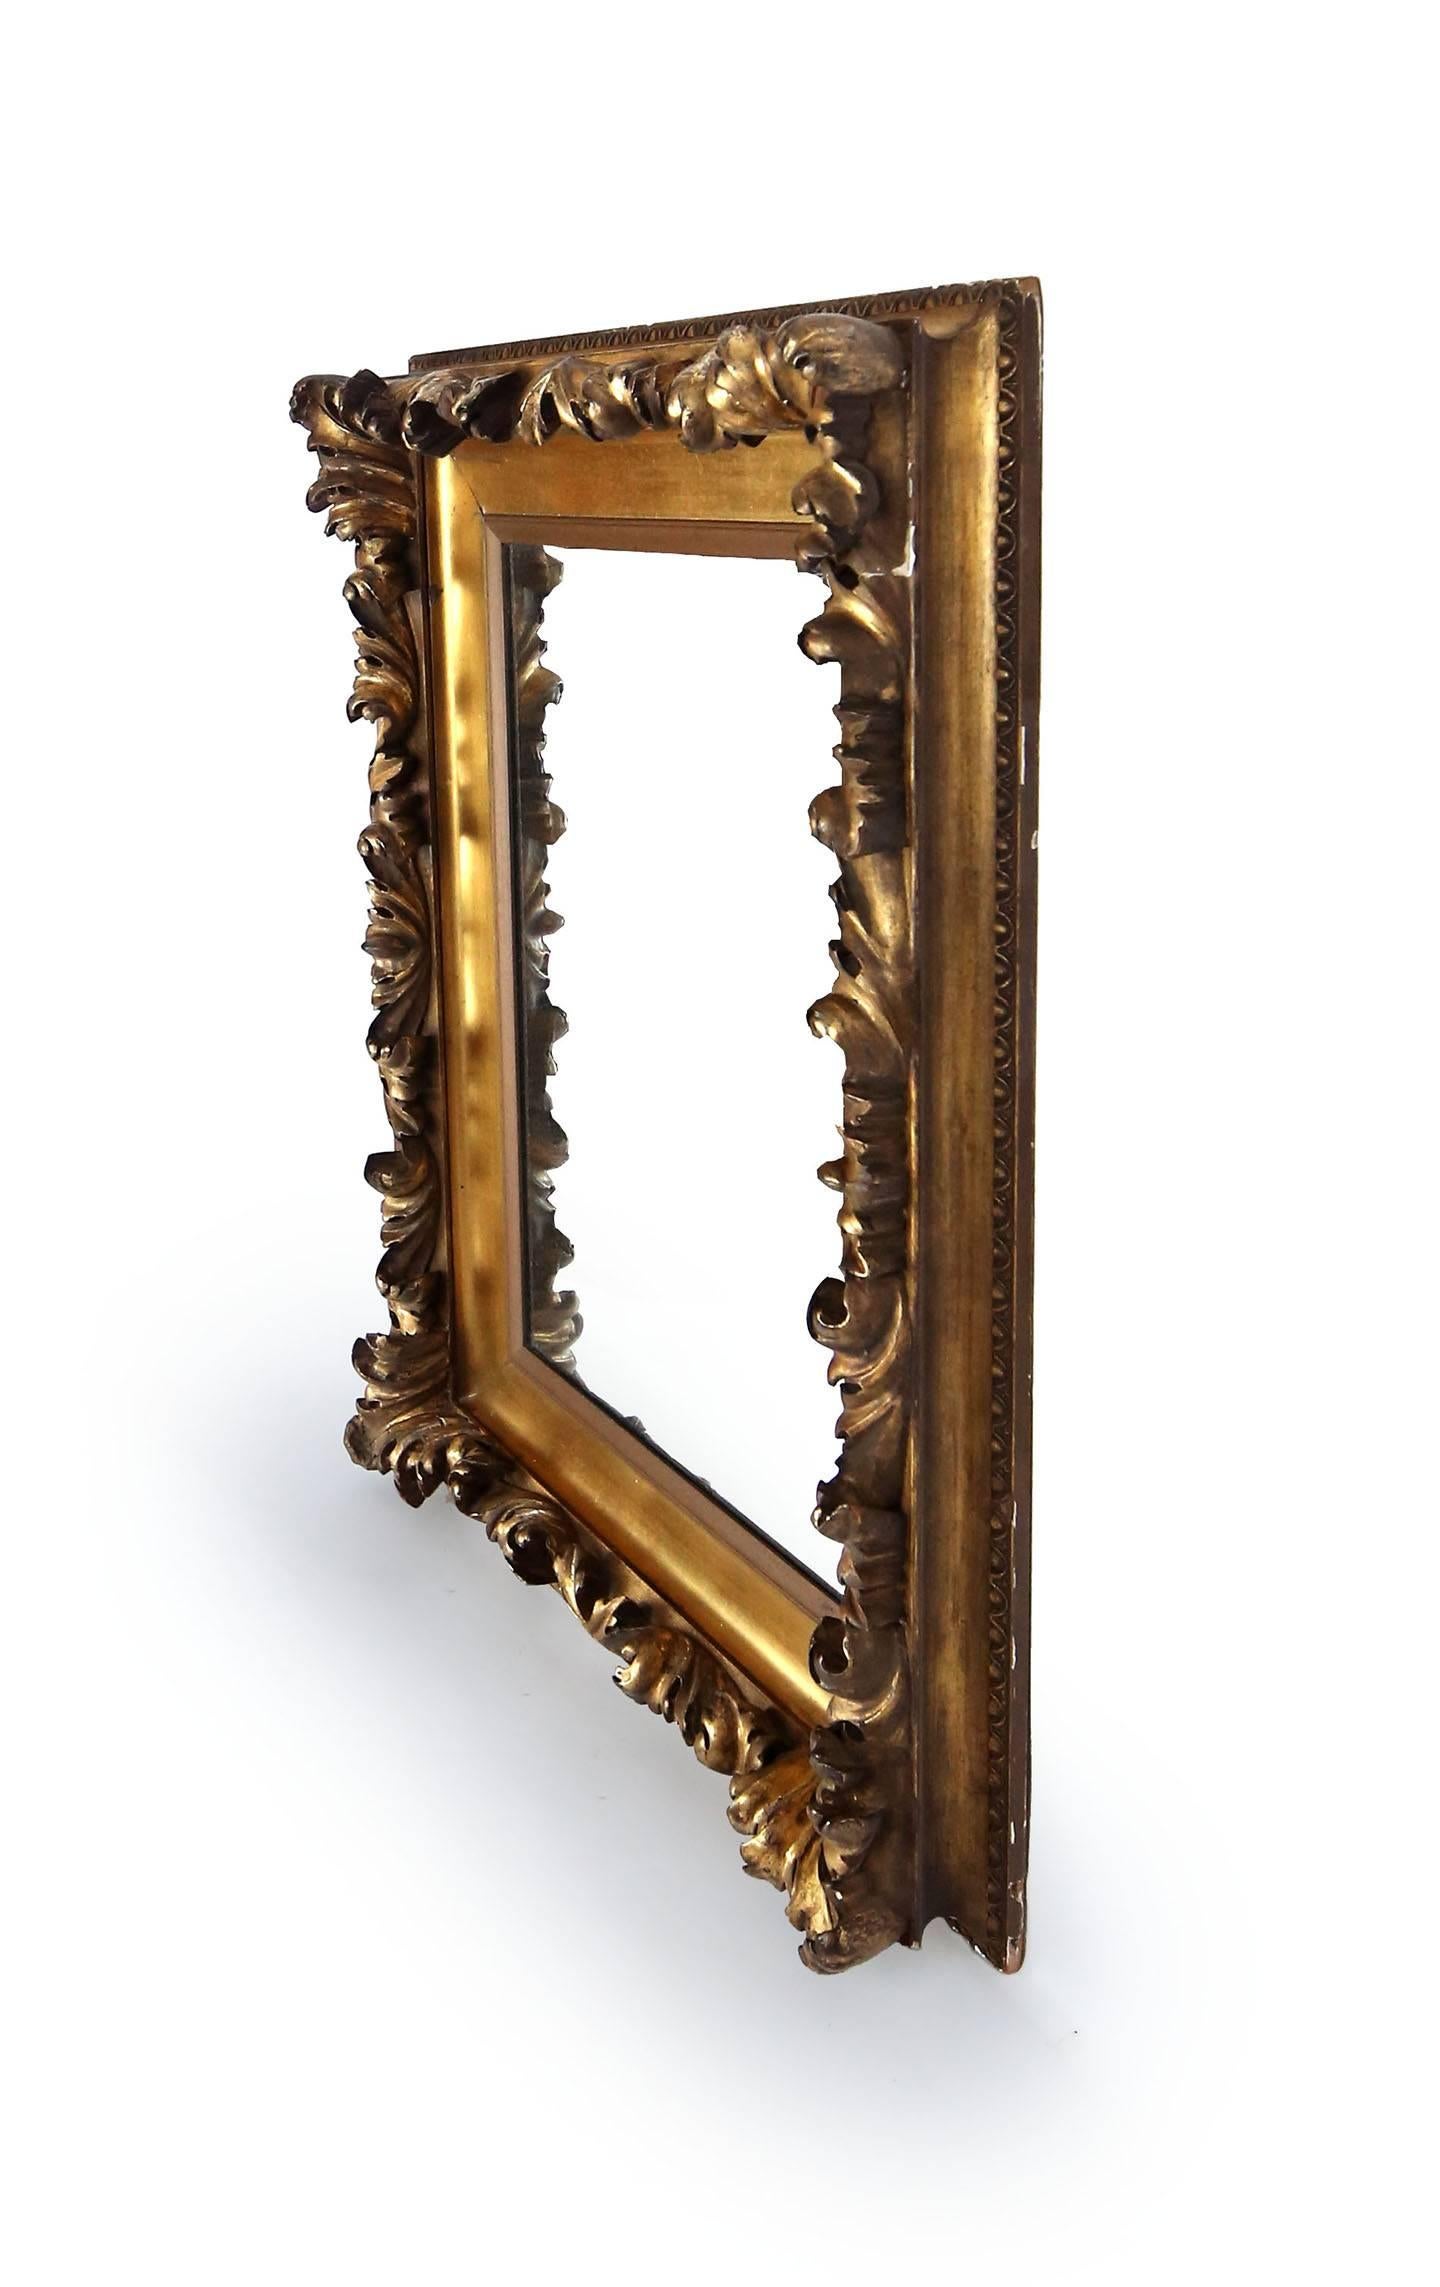 Reich geschnitzter, vergoldeter Spiegel mit Akanthusblättern und klobigem, gadroniertem Rand. Der äußere Rahmen wird durch kleine Ei- und Abnäherleisten eingefasst. Ein Kunstrahmen, der in ein Spiegelglas umgewandelt wurde. Amerikaner, um 1870.